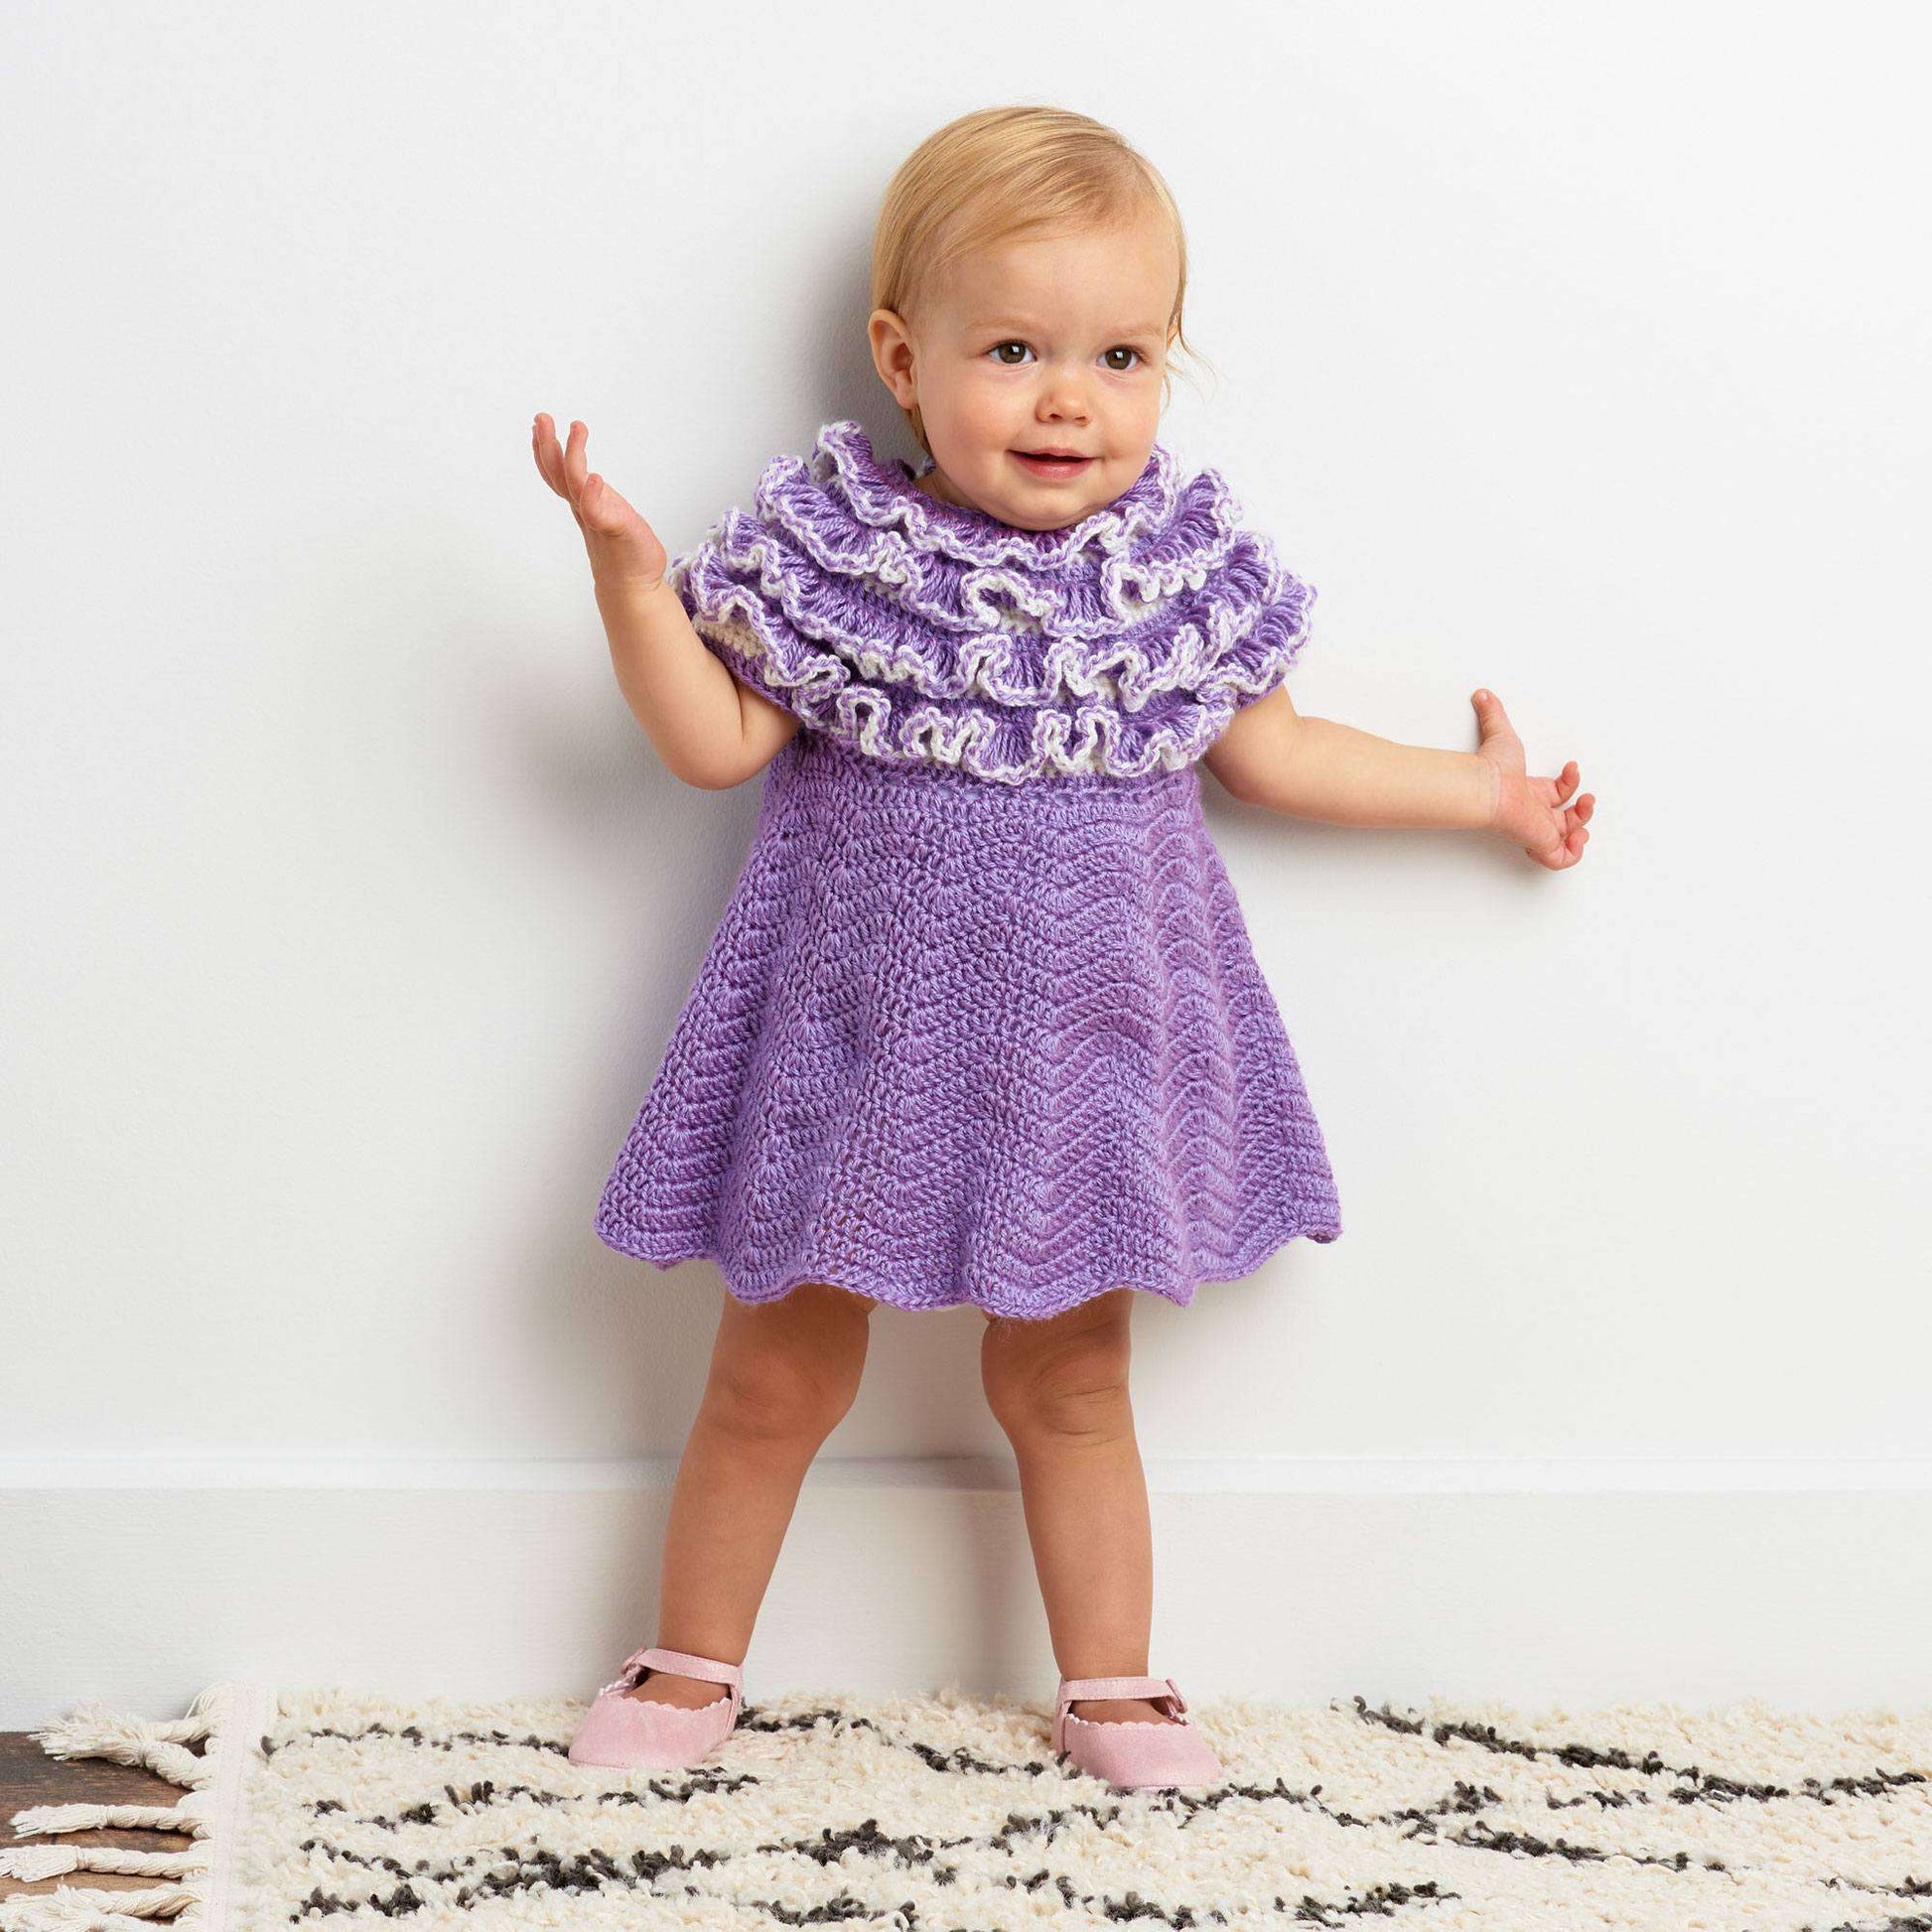 Free Bernat Crochet Ruffle Yoke Baby Dress Pattern